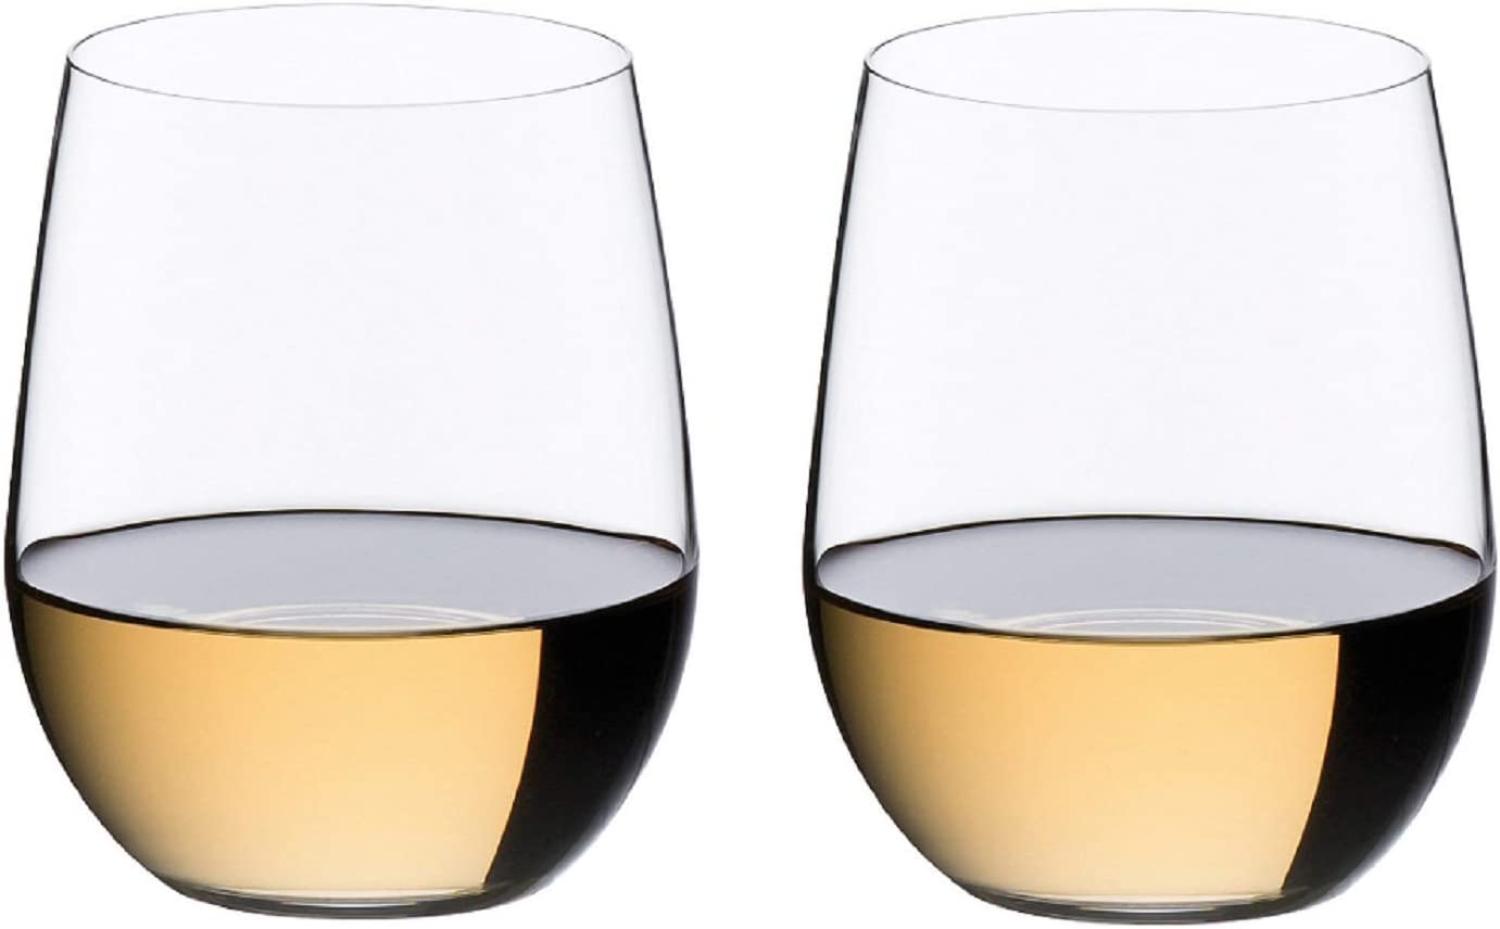 RIEDEL Weißweinglas-Set, 2-teilig, Für Weißweine wie Chardonnay und Viognier, 320 ml, Kristallglas, O Wine Tumbler, 0414-05 Bild 1